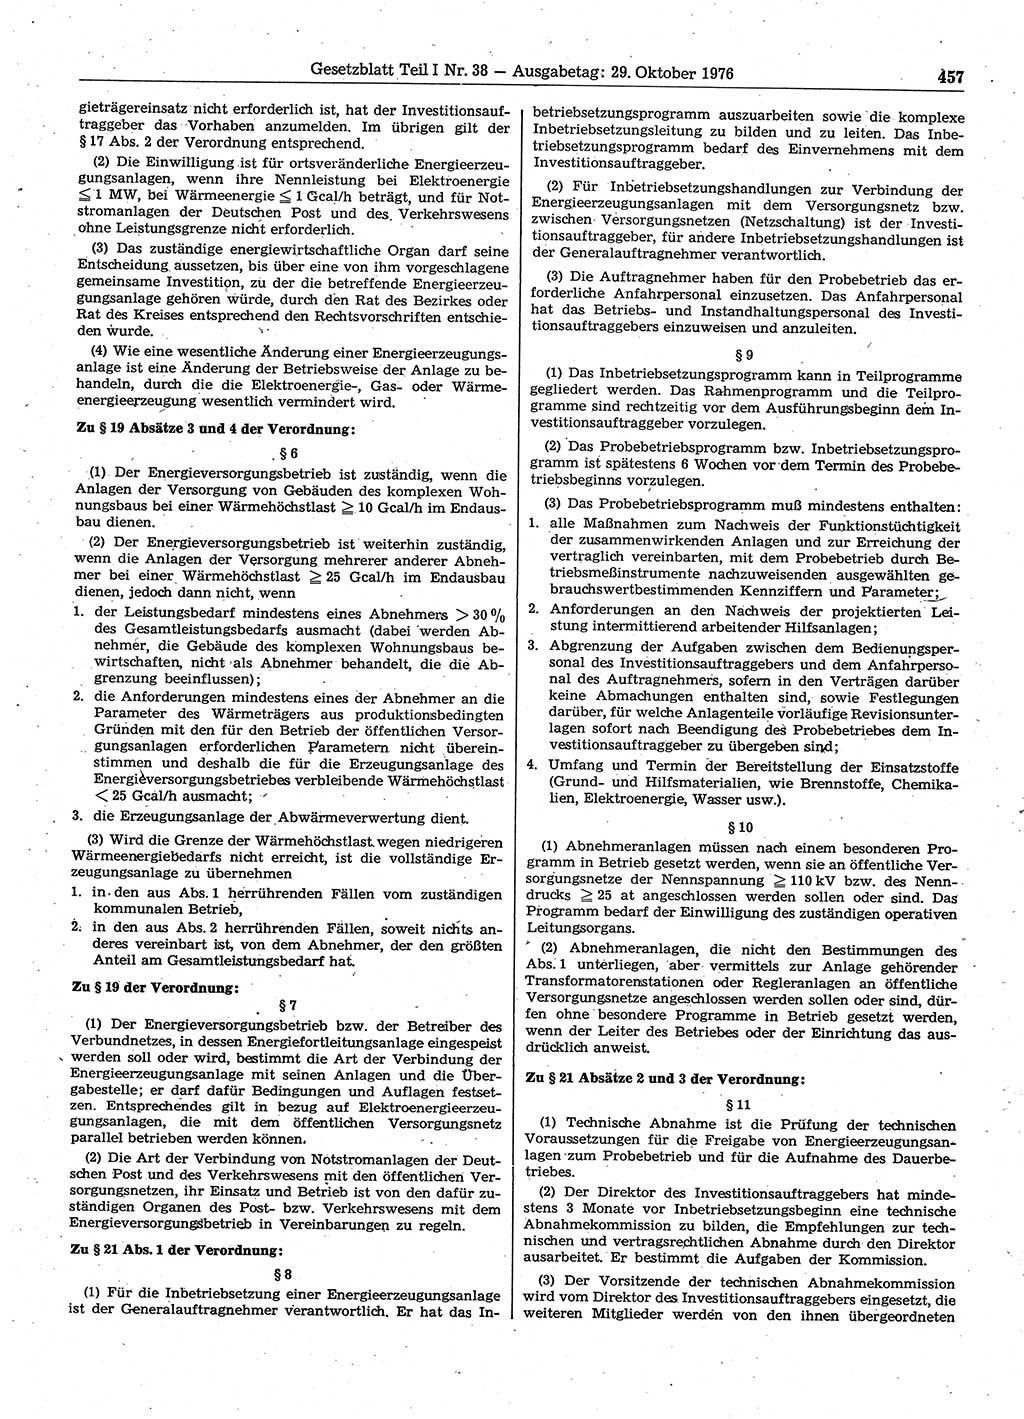 Gesetzblatt (GBl.) der Deutschen Demokratischen Republik (DDR) Teil Ⅰ 1976, Seite 457 (GBl. DDR Ⅰ 1976, S. 457)